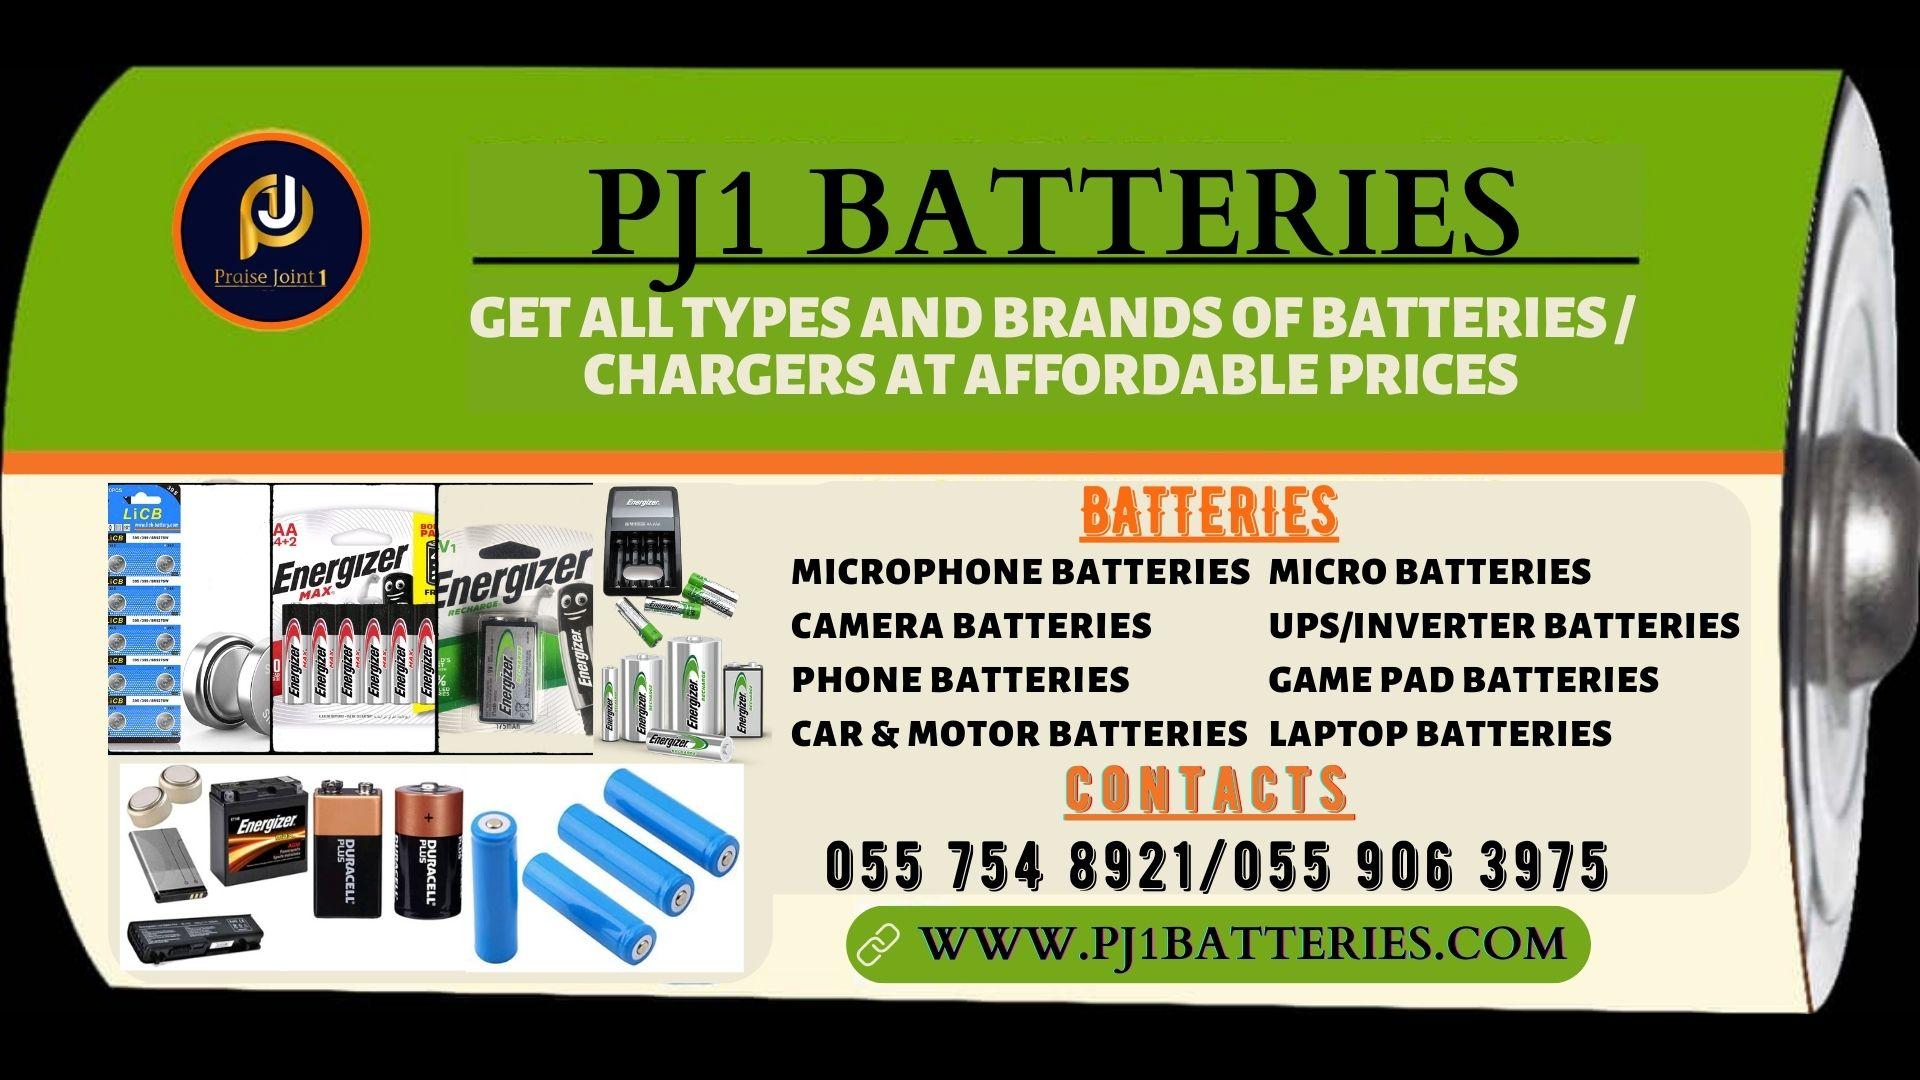 pj1 battery banner